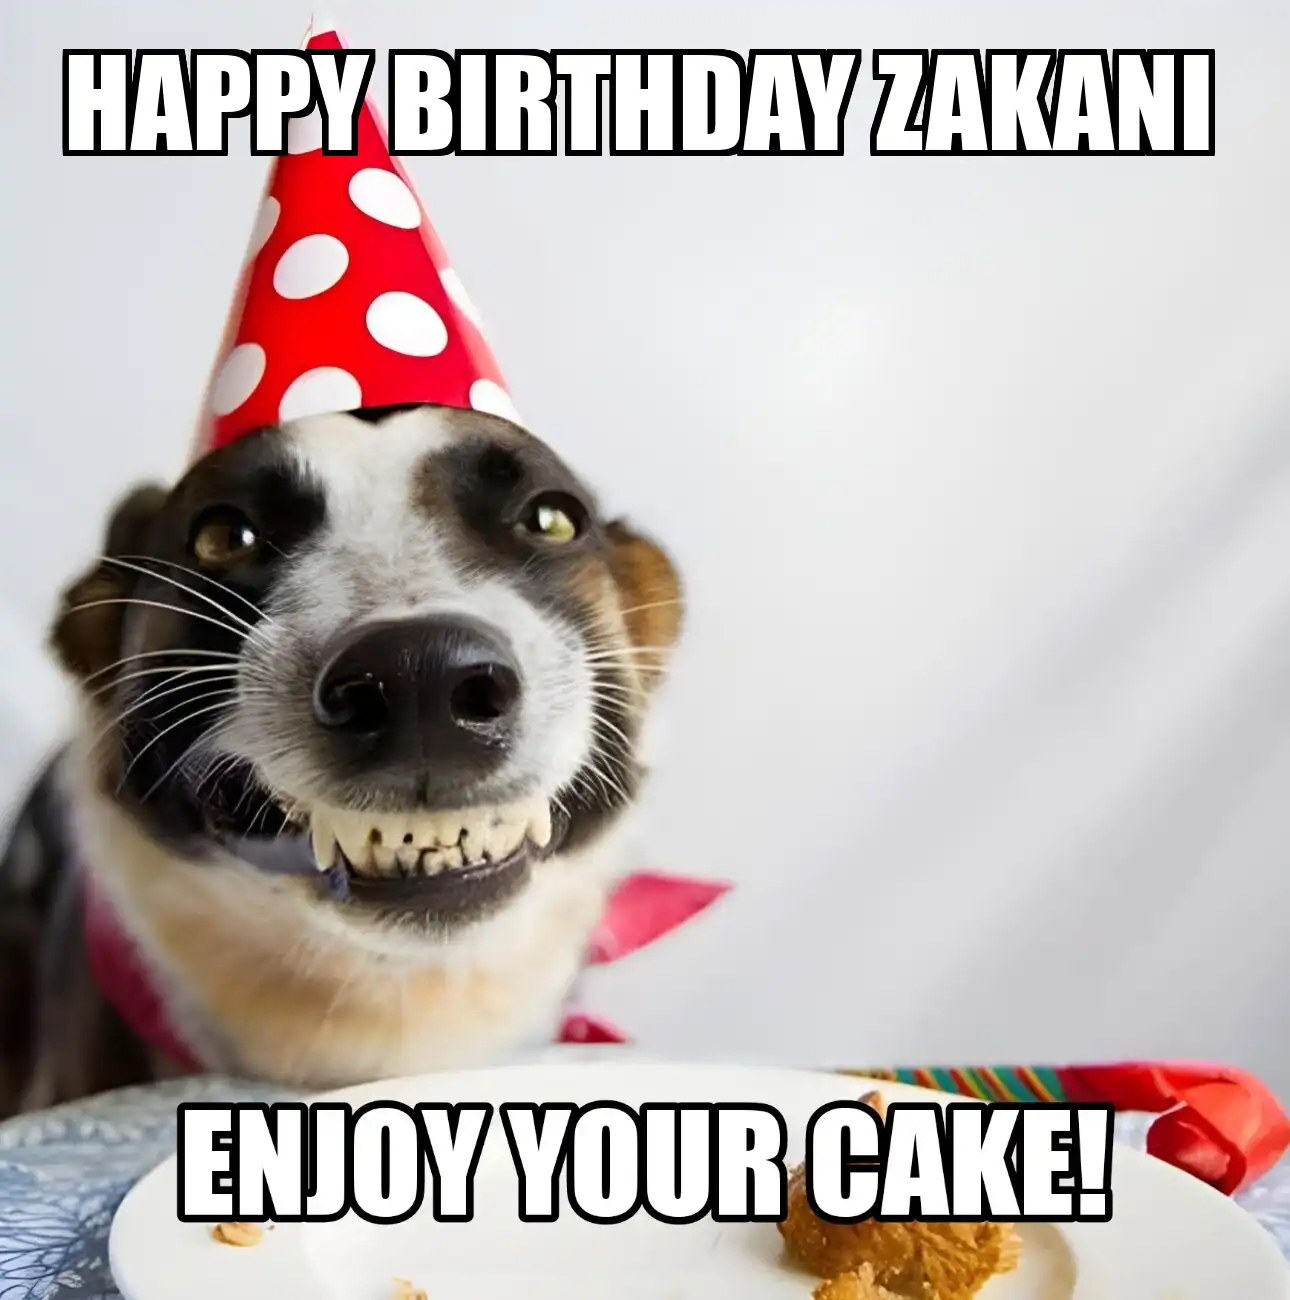 Happy Birthday Zakani Enjoy Your Cake Dog Meme